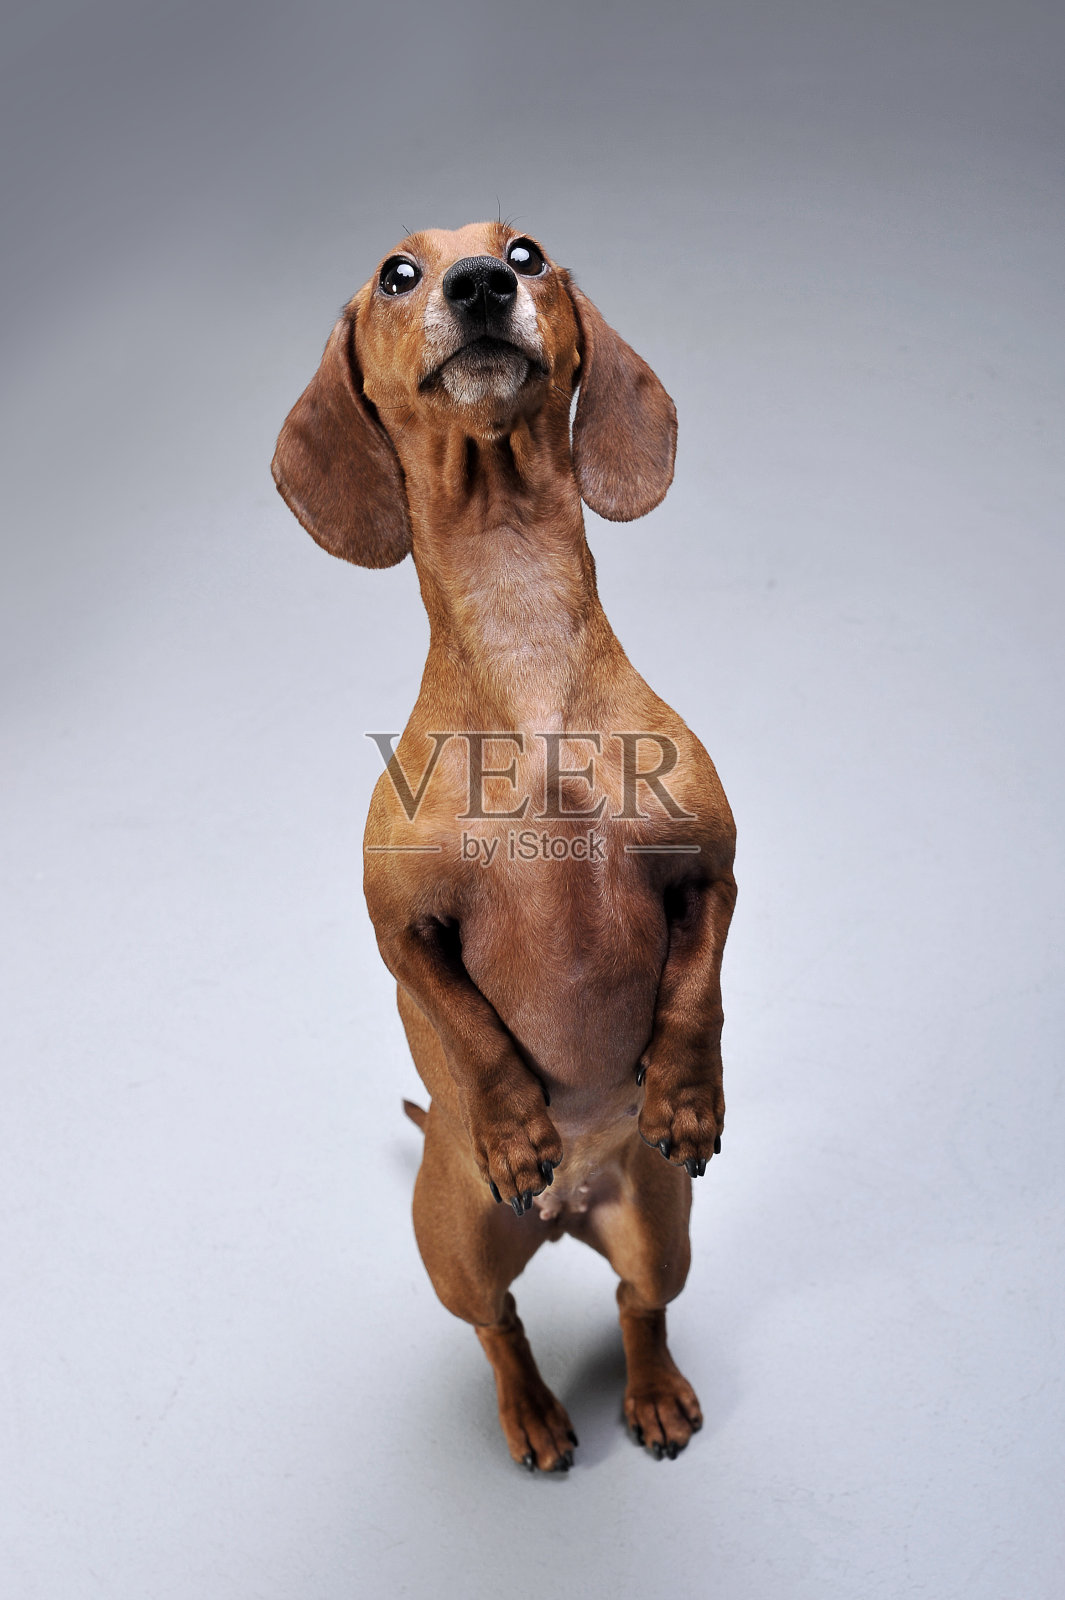 这是一只可爱的短毛腊肠犬用后腿站立的照片照片摄影图片